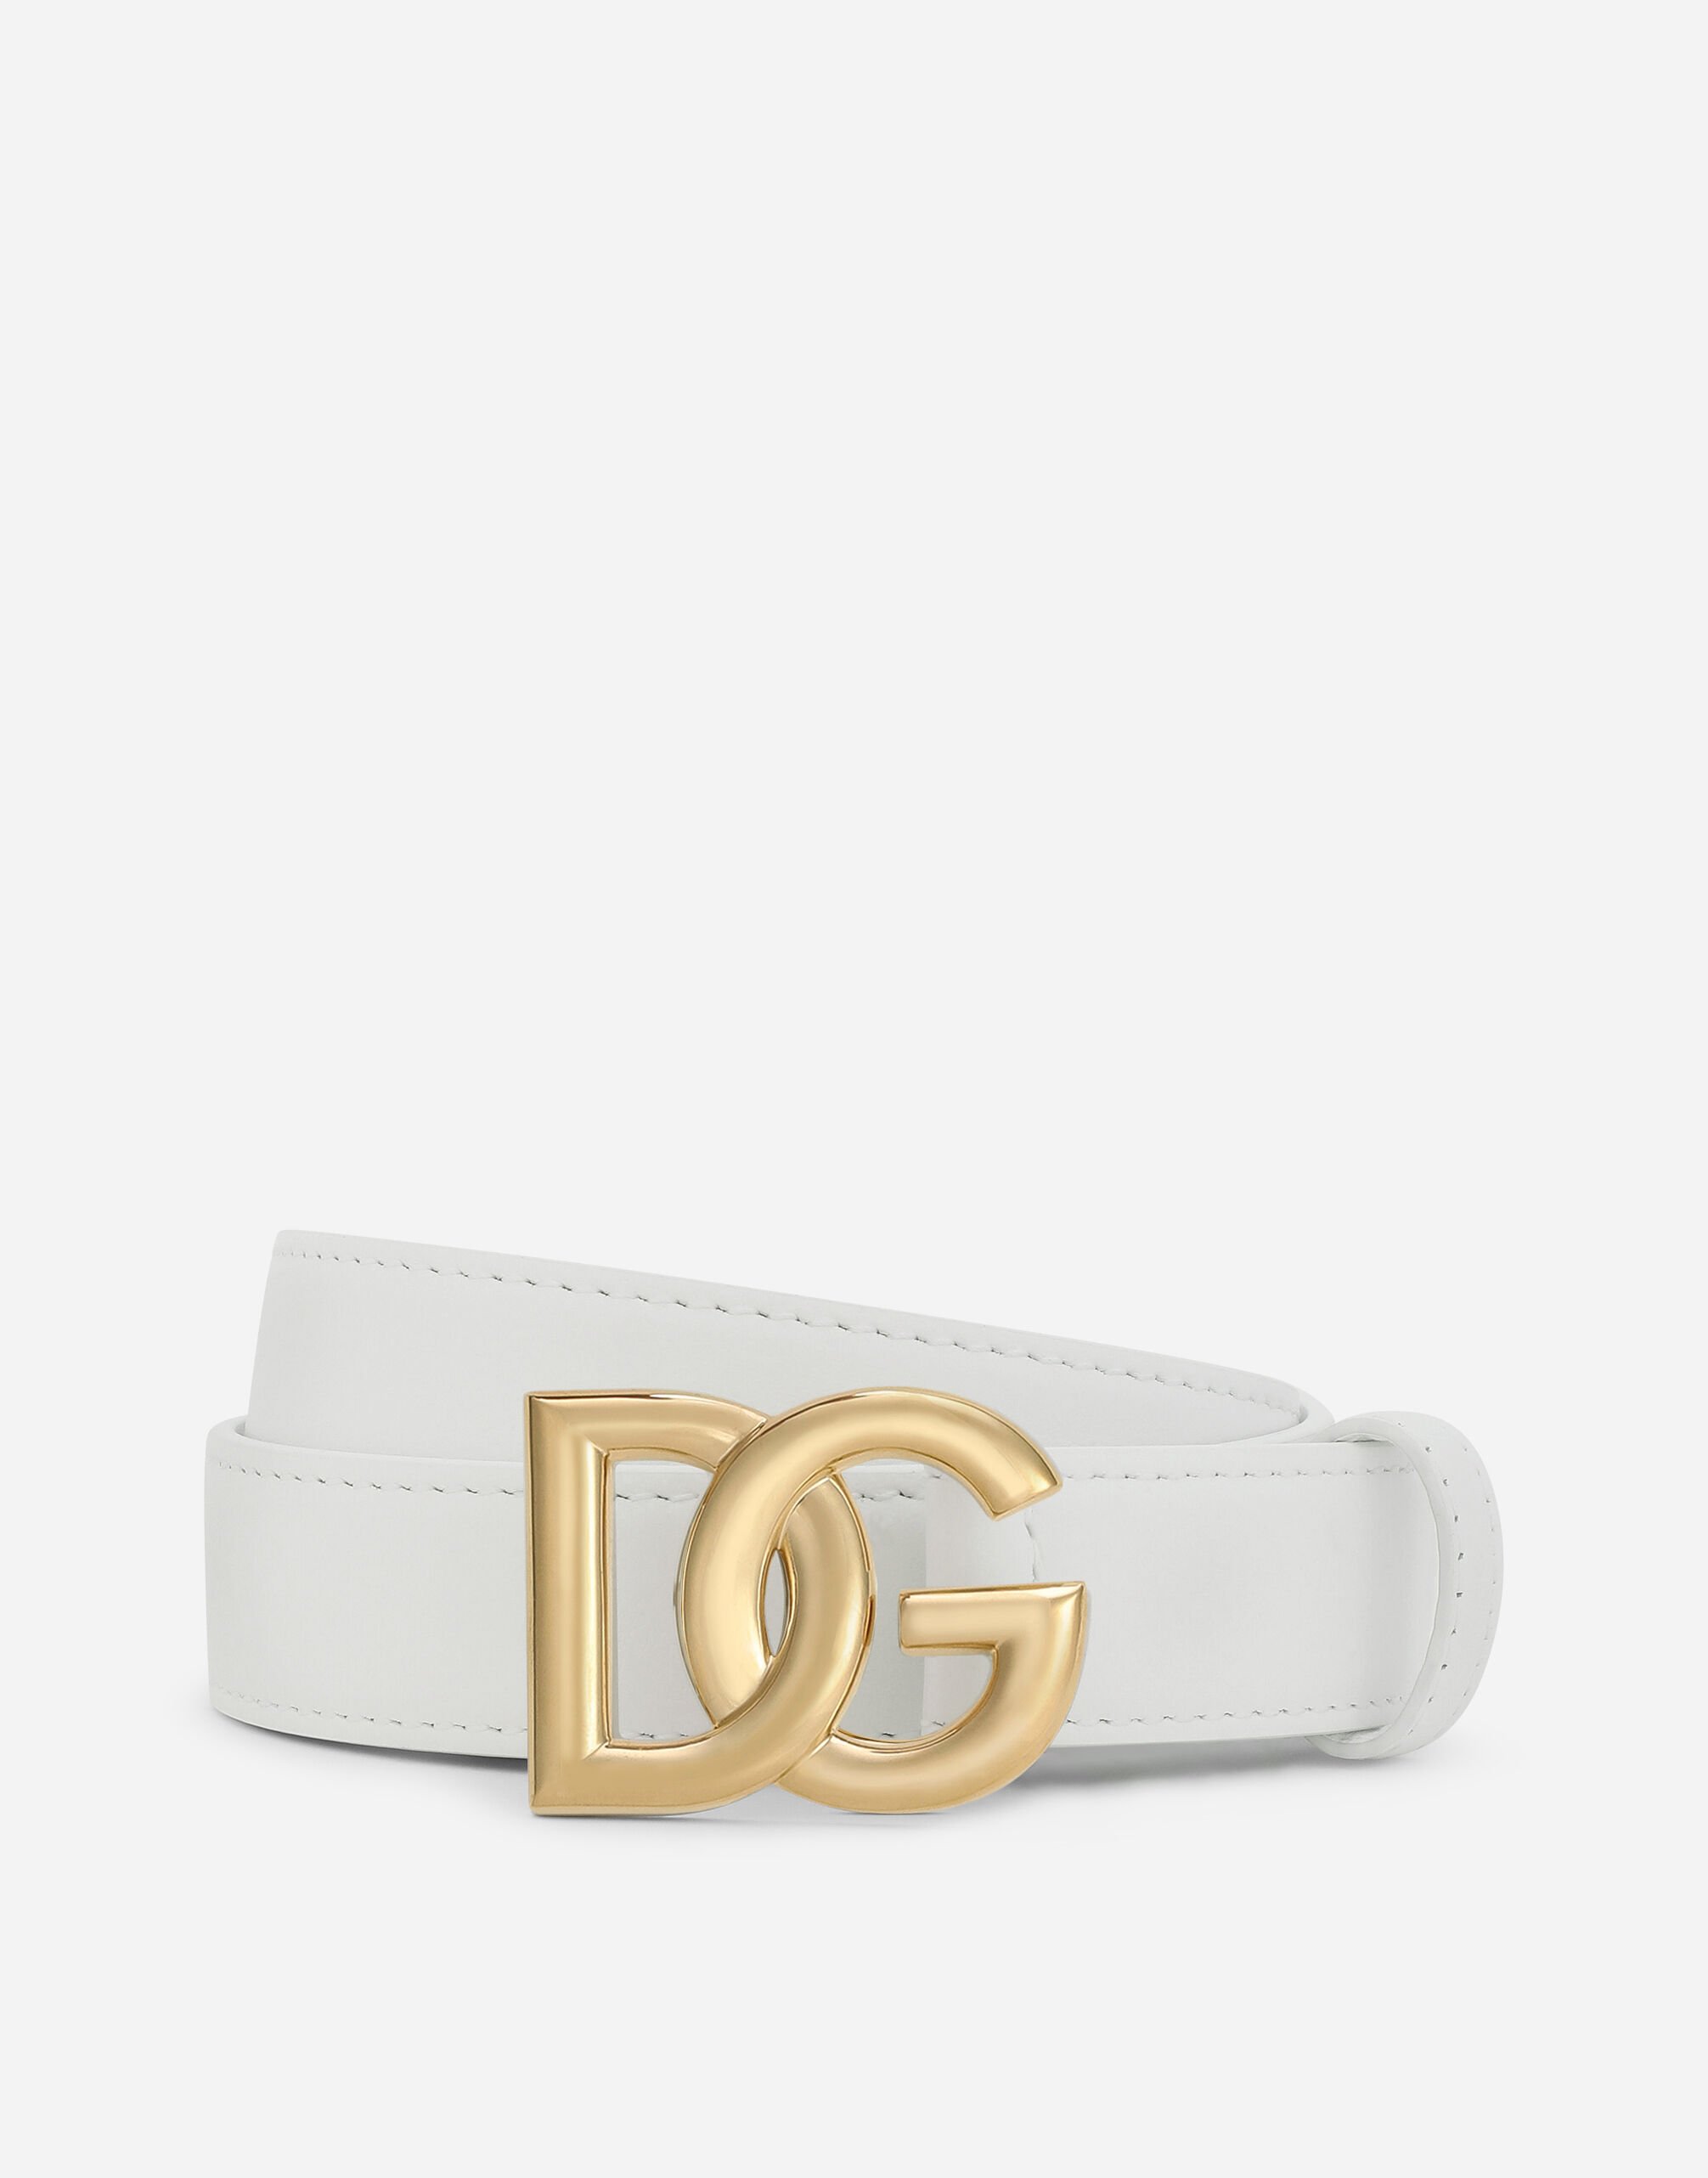 Dolce & Gabbana Calfskin belt with DG logo Black BE1446AW576